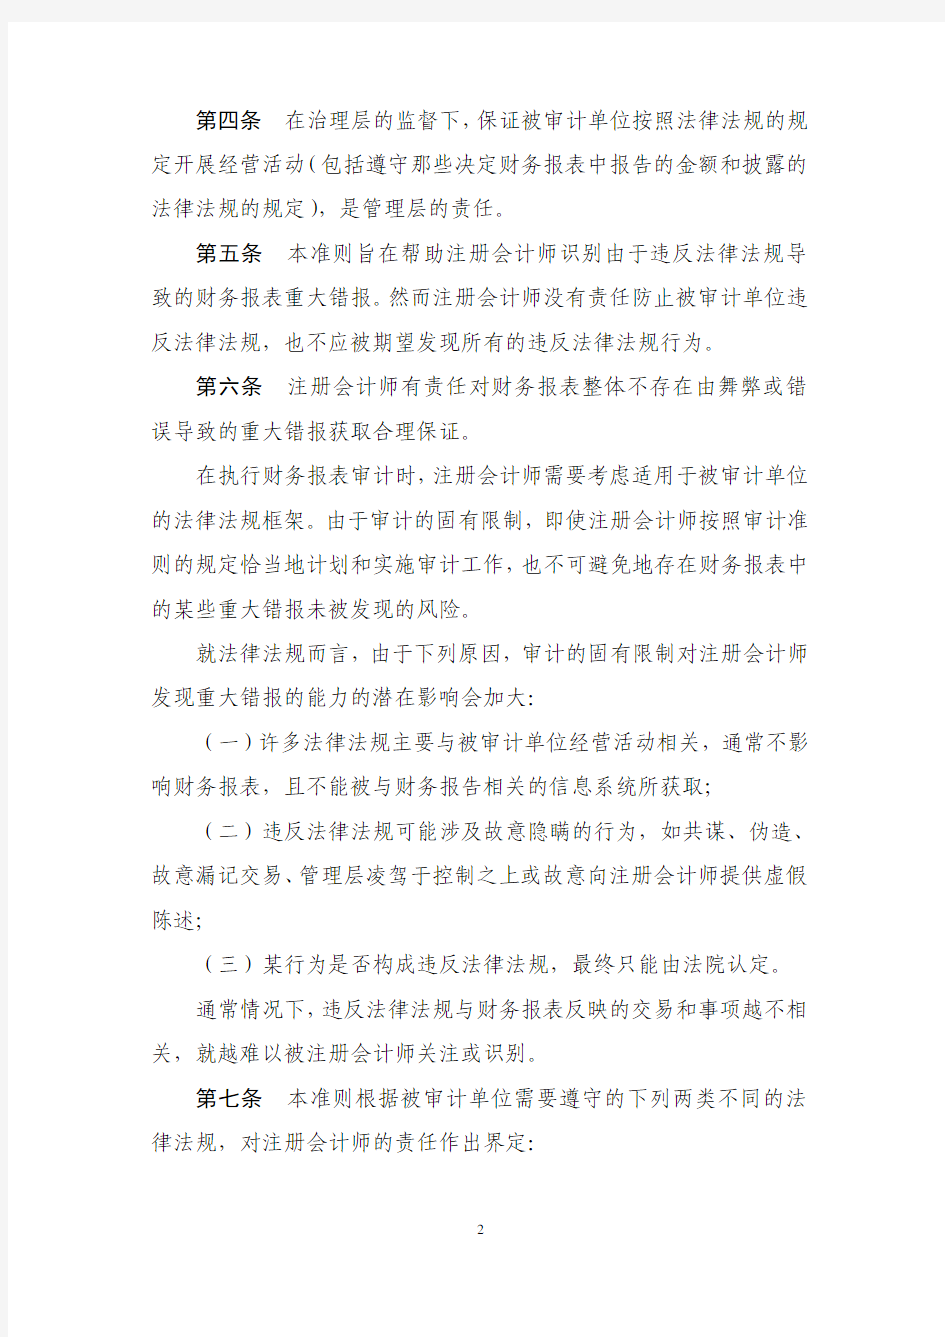 中国注册会计师审计准则第1142号